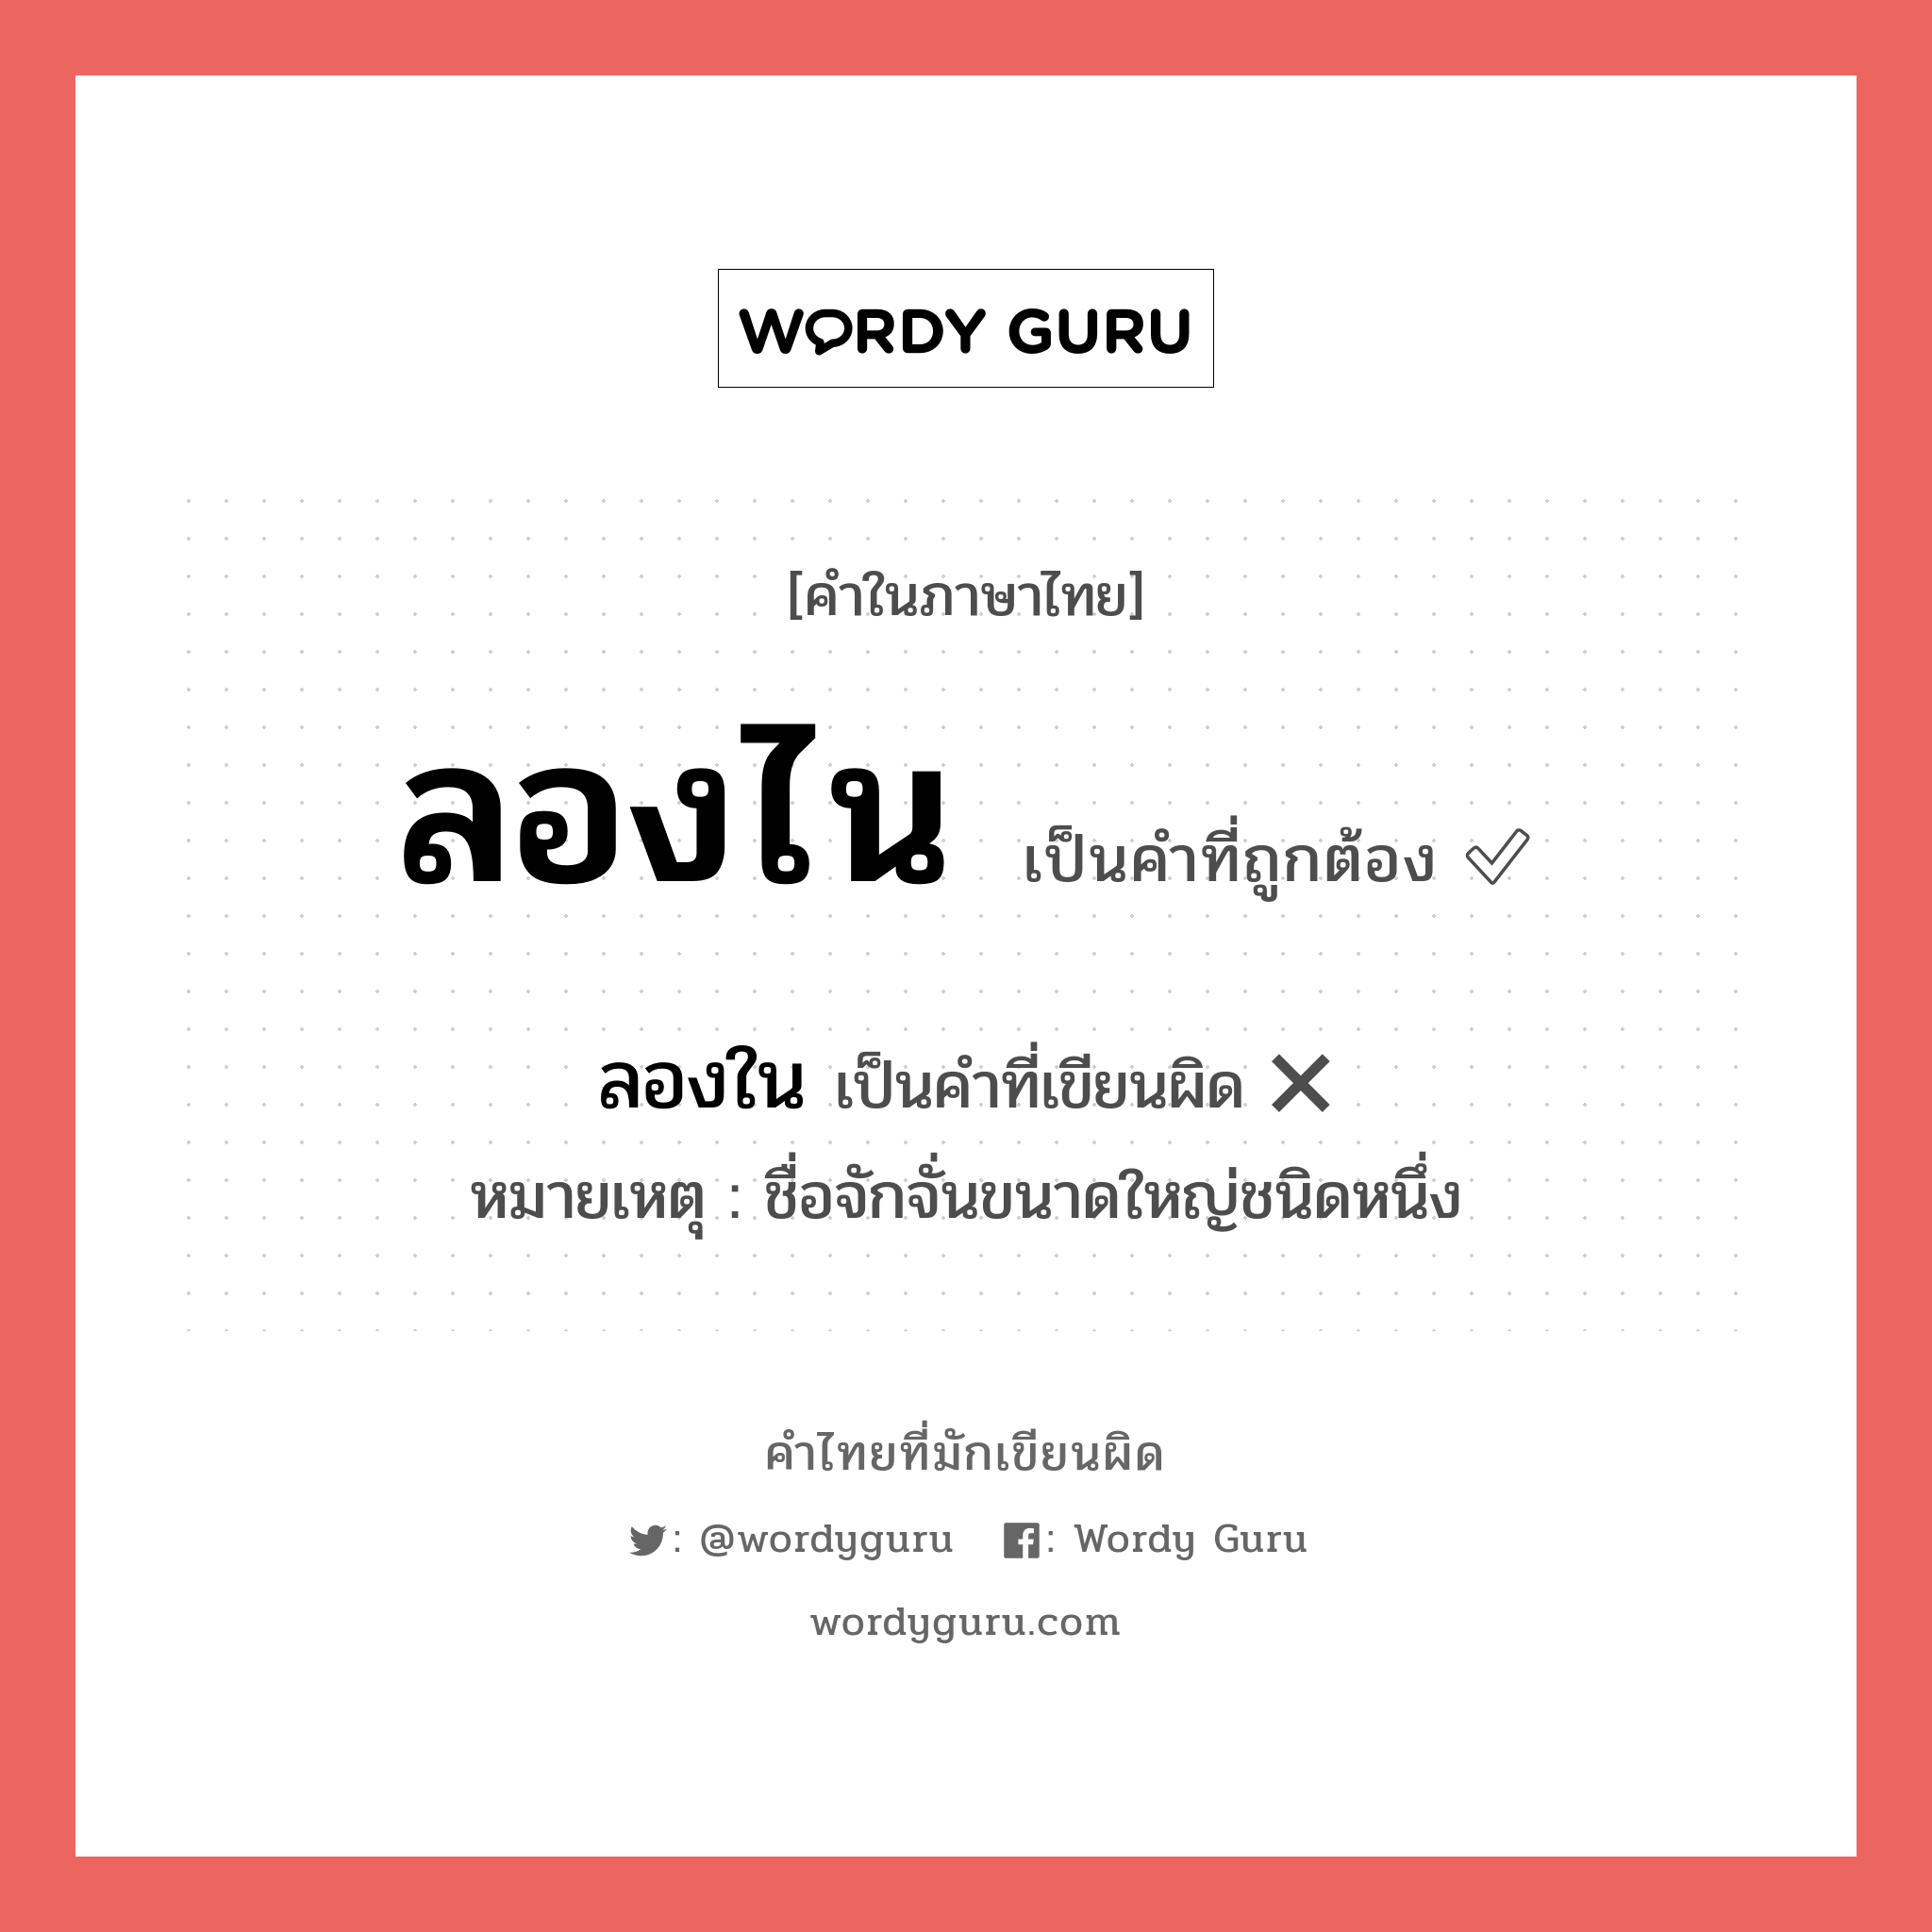 ลองใน หรือ ลองไน คำไหนเขียนถูก?, คำในภาษาไทยที่มักเขียนผิด ลองใน คำที่ผิด ❌ ลองไน หมายเหตุ ชื่อจักจั่นขนาดใหญ่ชนิดหนึ่ง